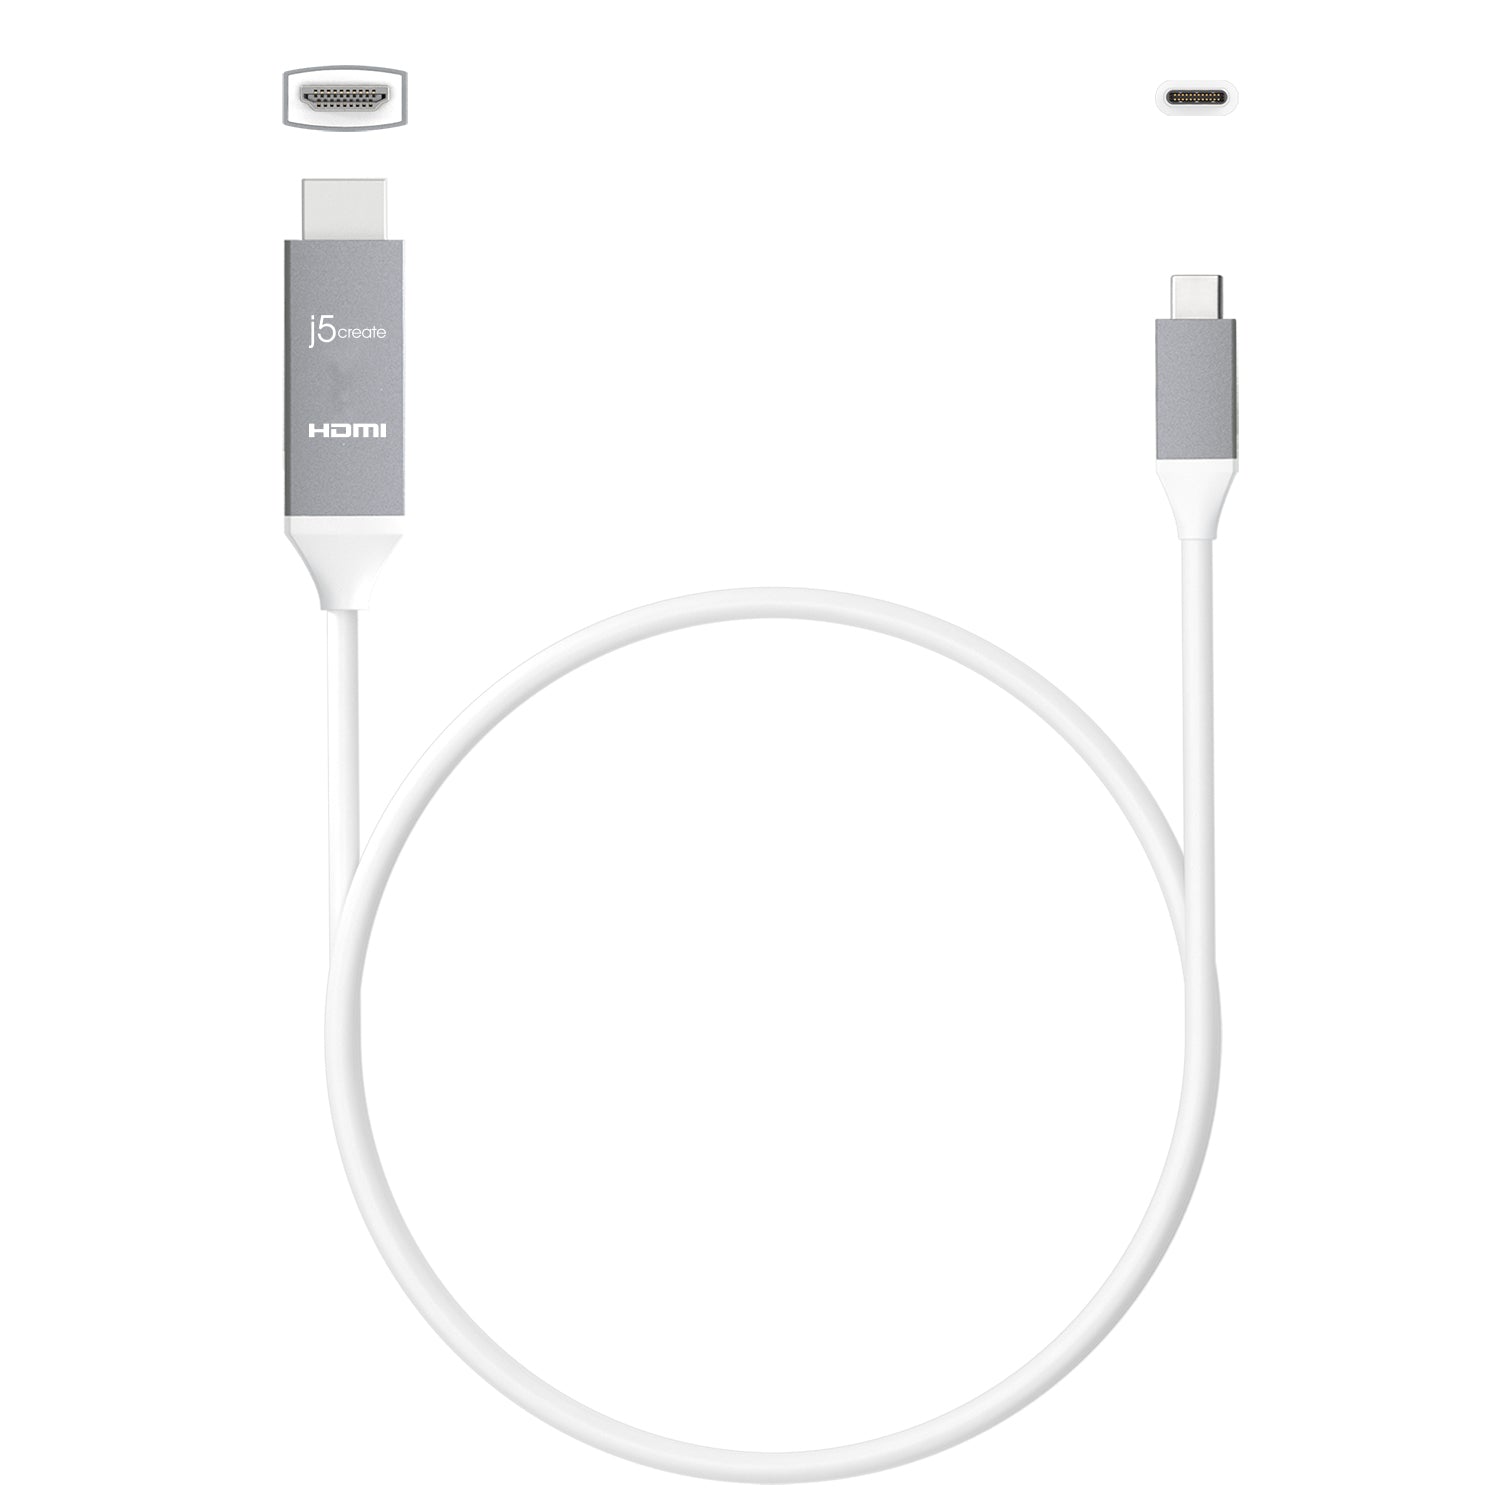 Cable HDMI TPE con conector para iOS, micro USB y Tipo C (Android)